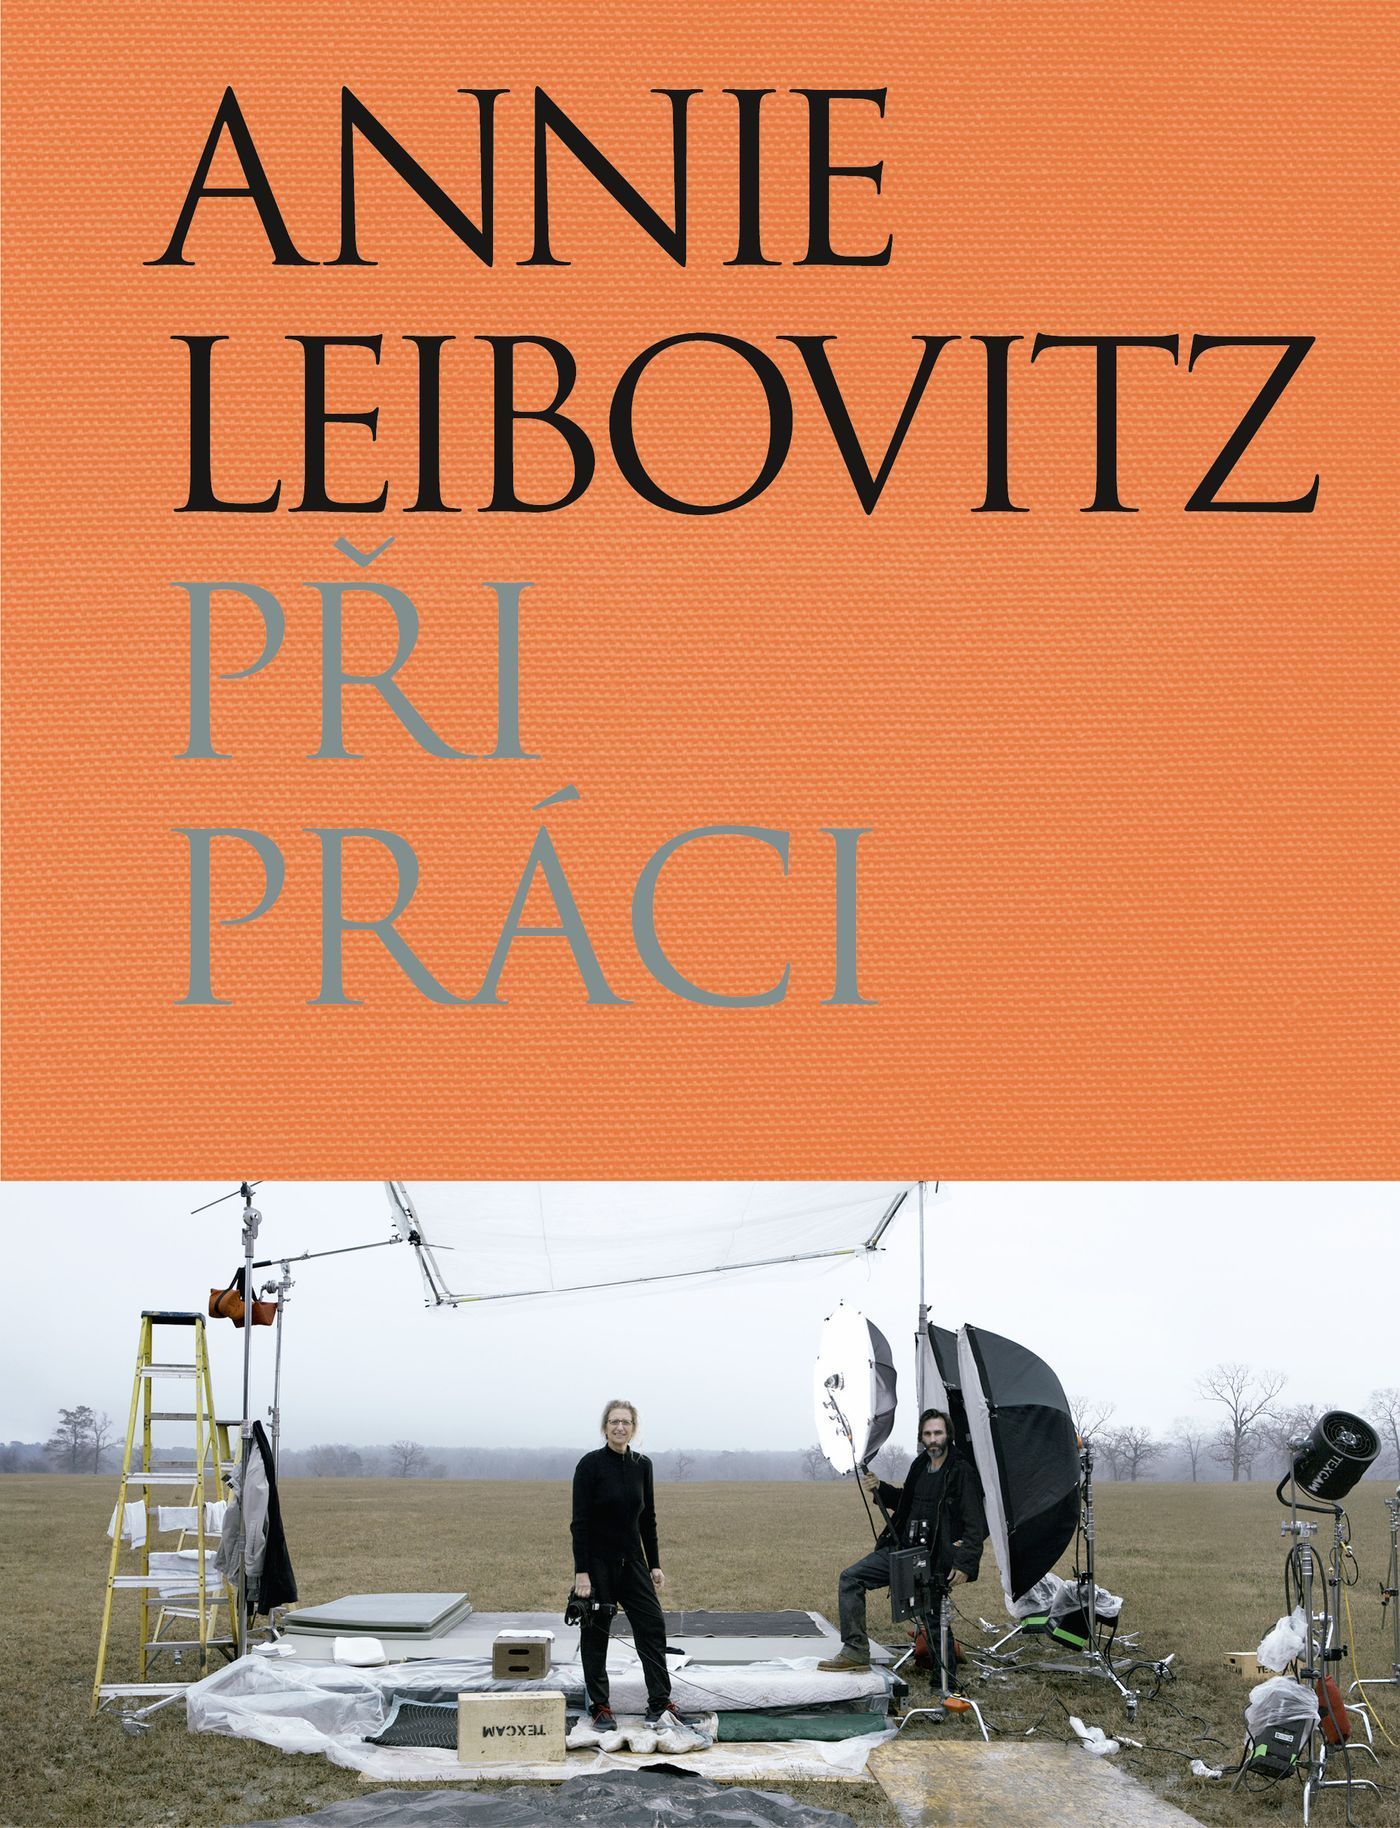 Annie Leibovitz: Při práci